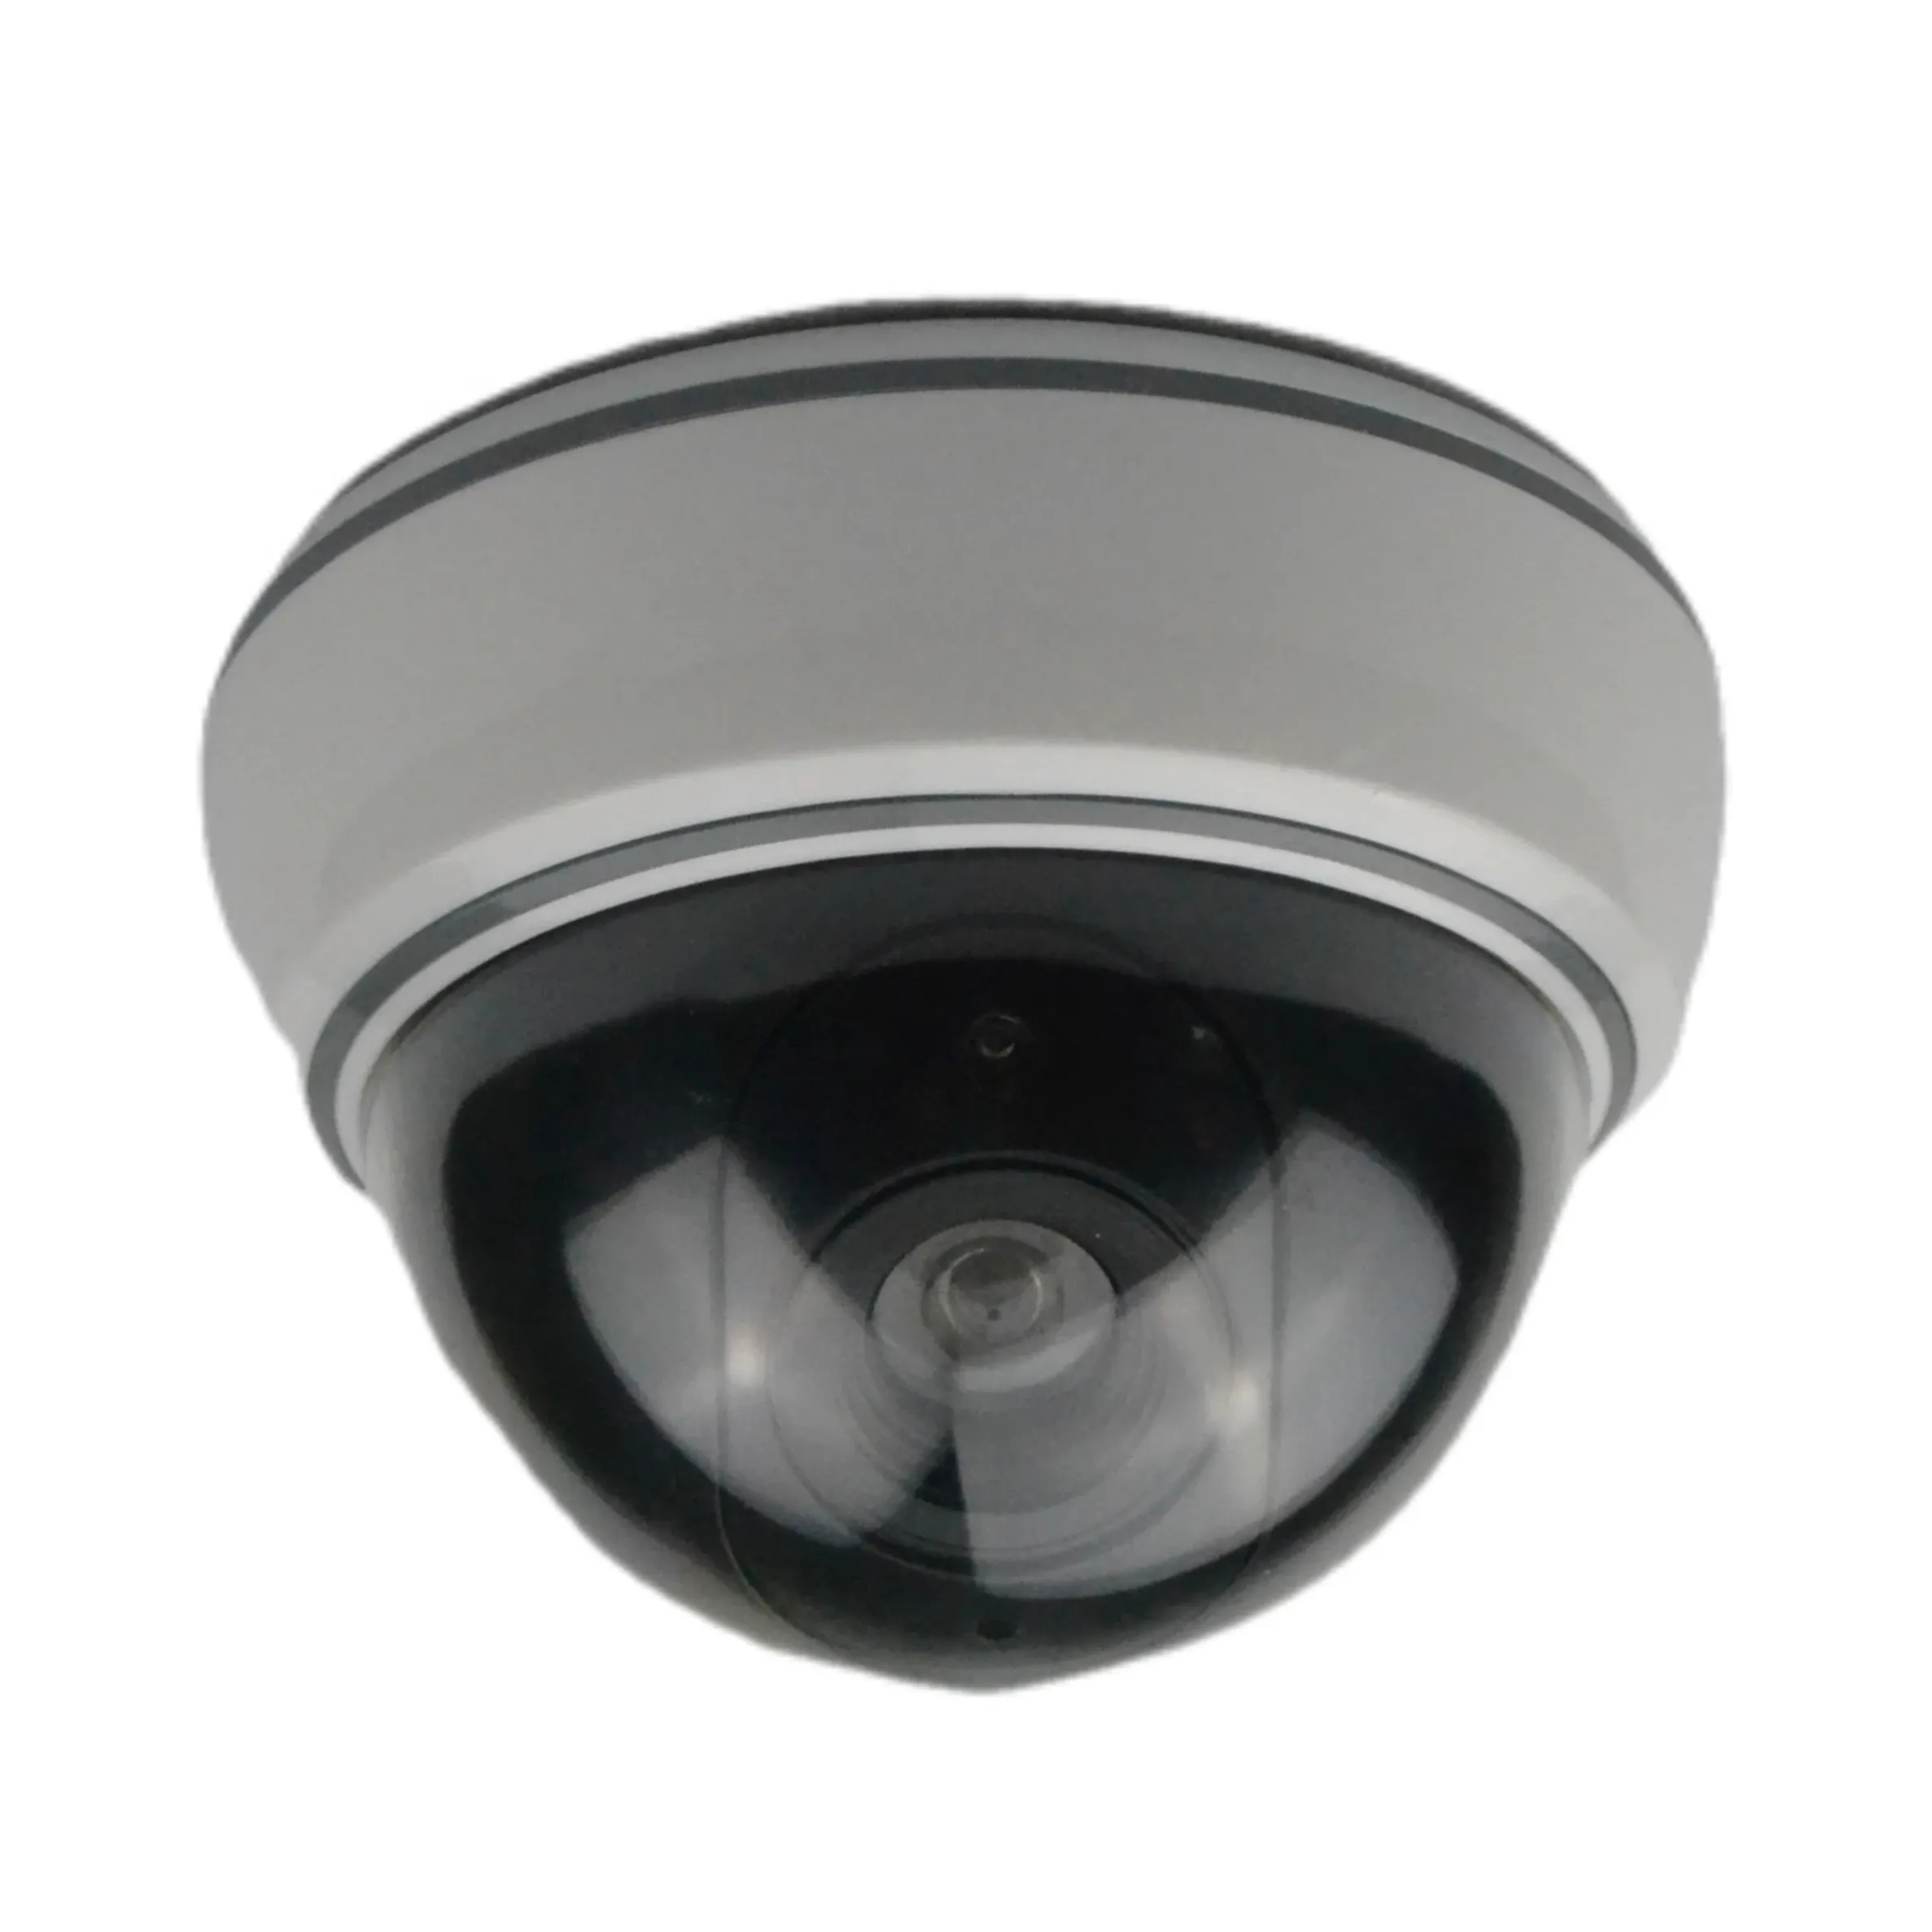 핫 세일 돔 더미 가짜 보안 카메라 모델 실내 LED 깜박임 빛 CCTV 방수 시뮬레이션